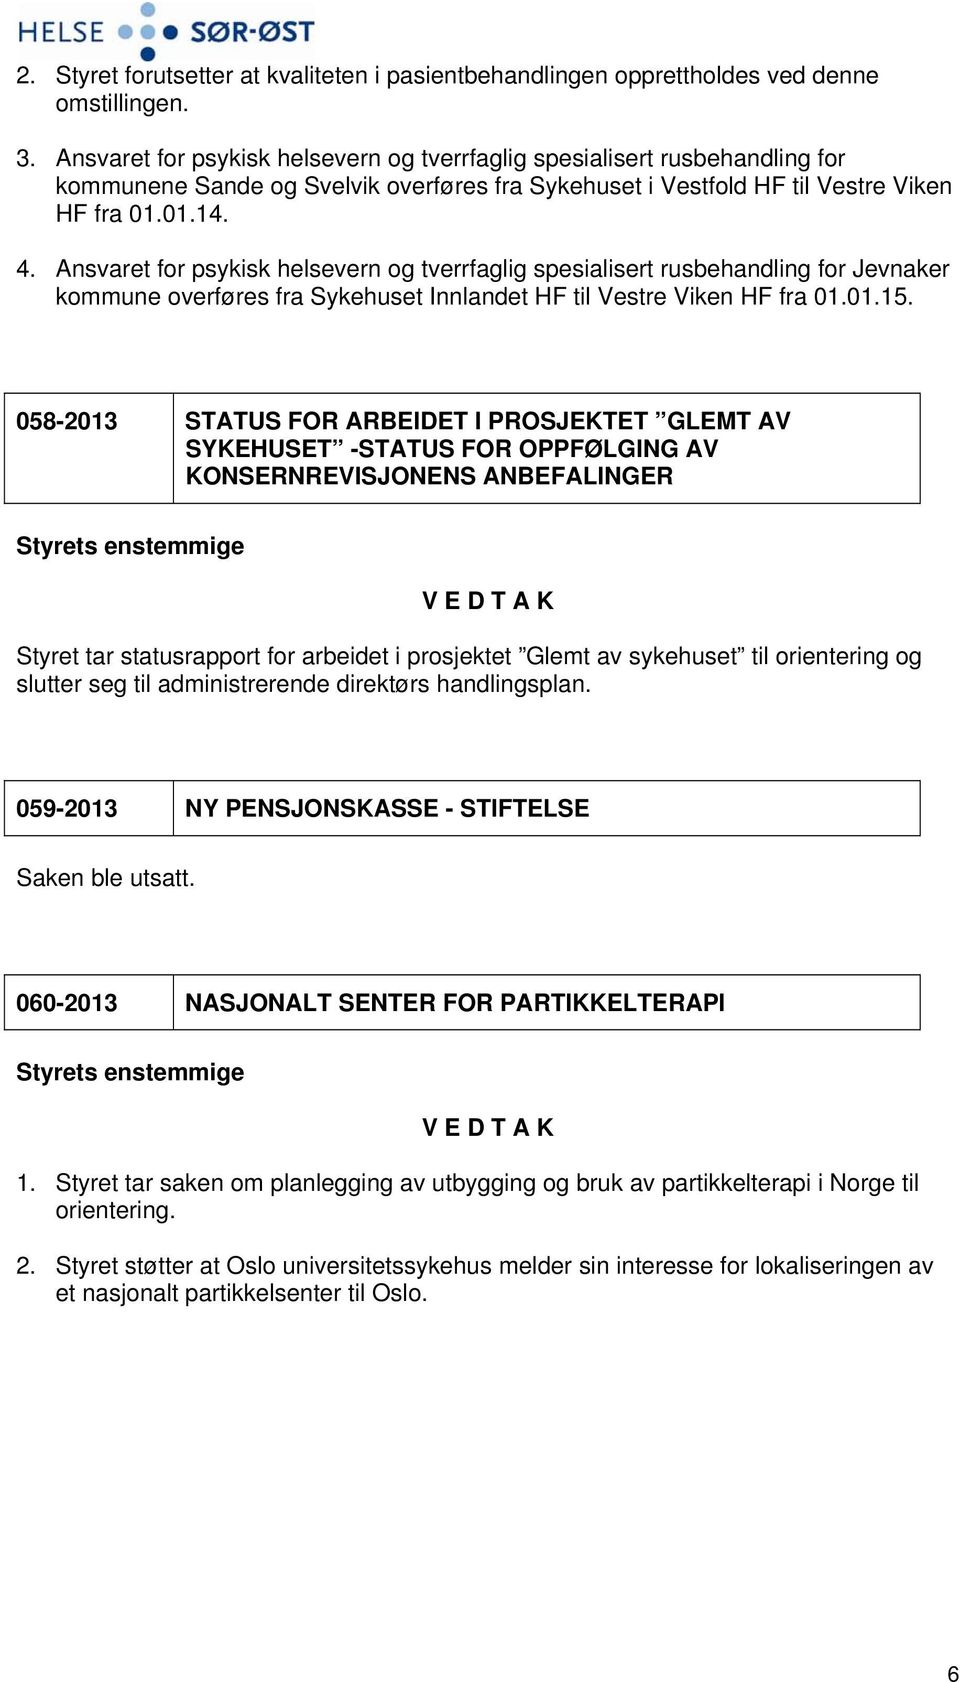 Ansvaret for psykisk helsevern og tverrfaglig spesialisert rusbehandling for Jevnaker kommune overføres fra Sykehuset Innlandet HF til Vestre Viken HF fra 01.01.15.